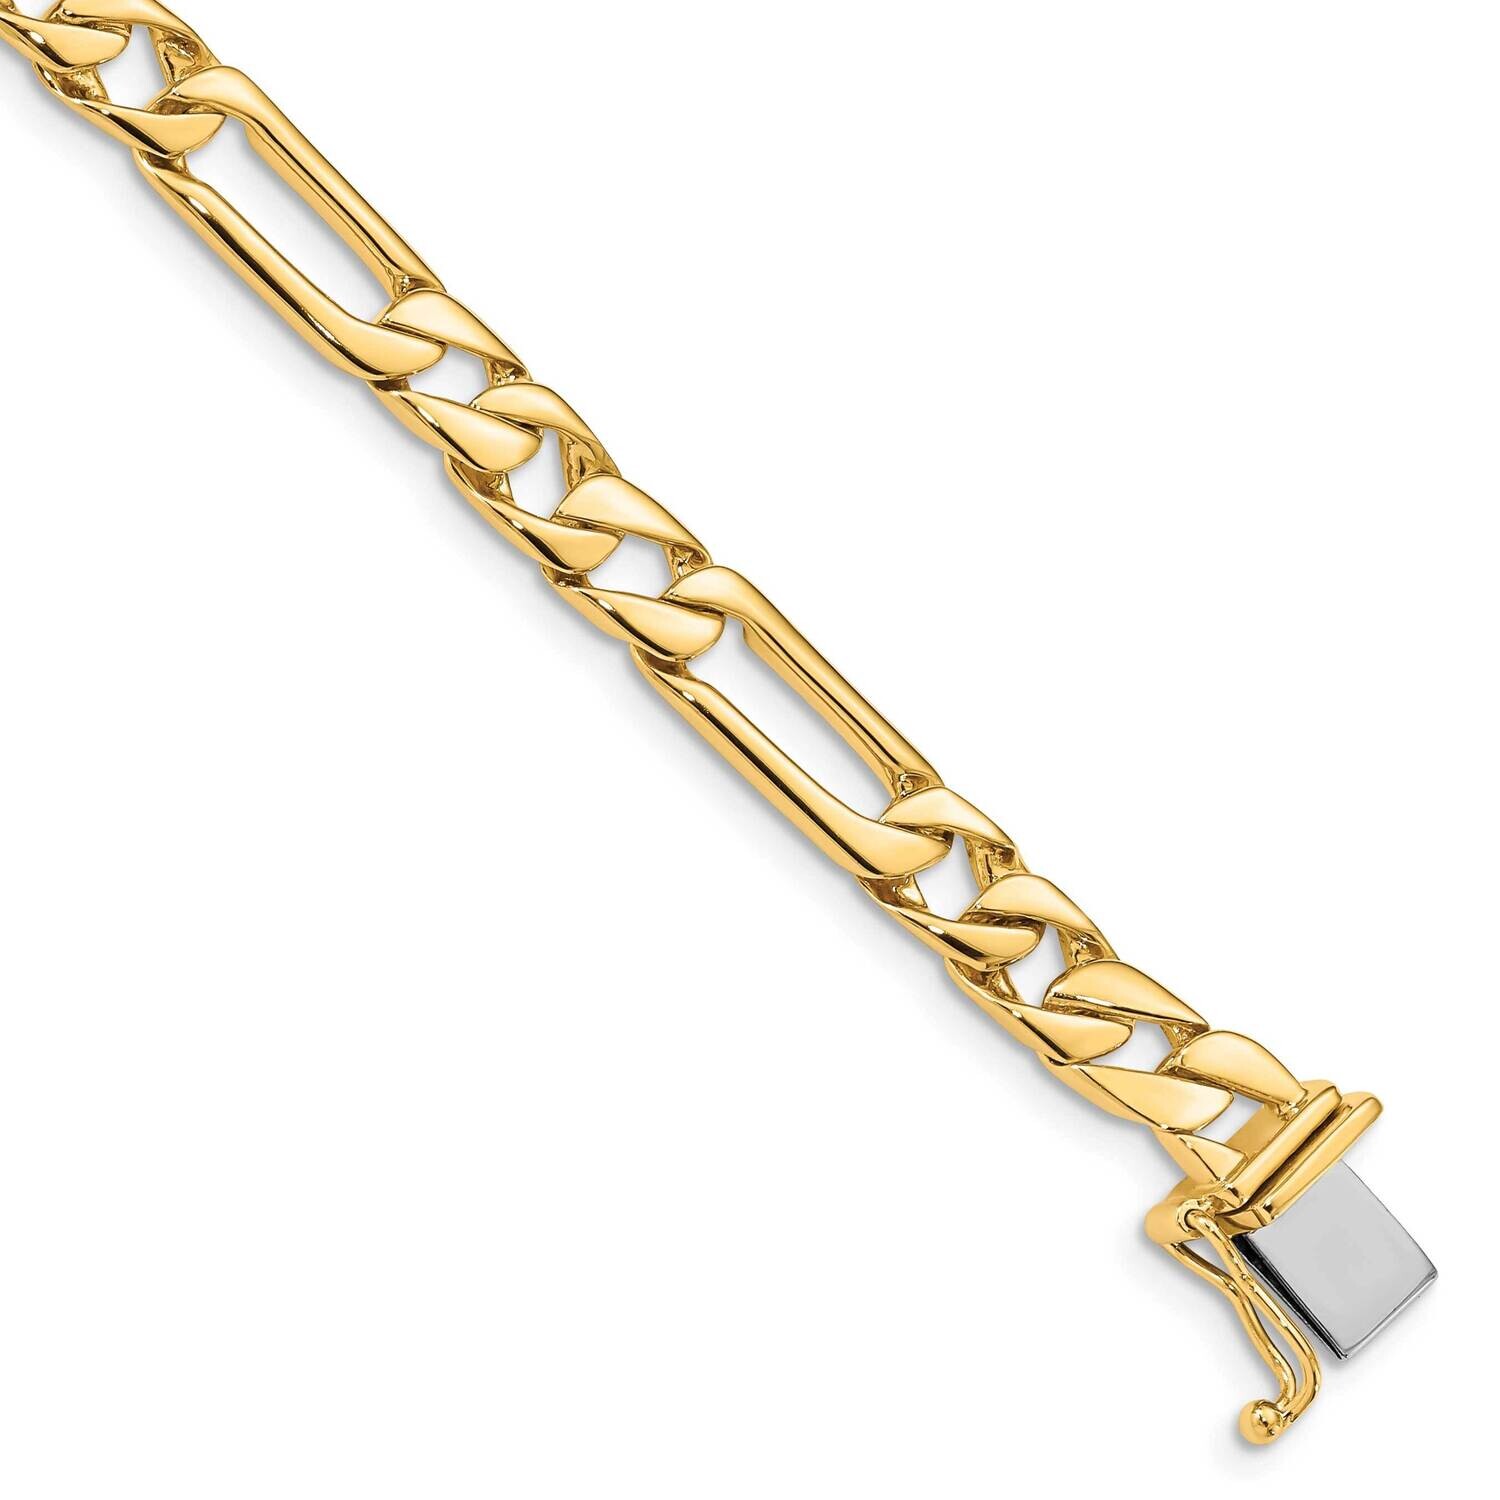 6mm Hand-Polished Fancy Link Bracelet 8 Inch 10k Gold 10LK154-8